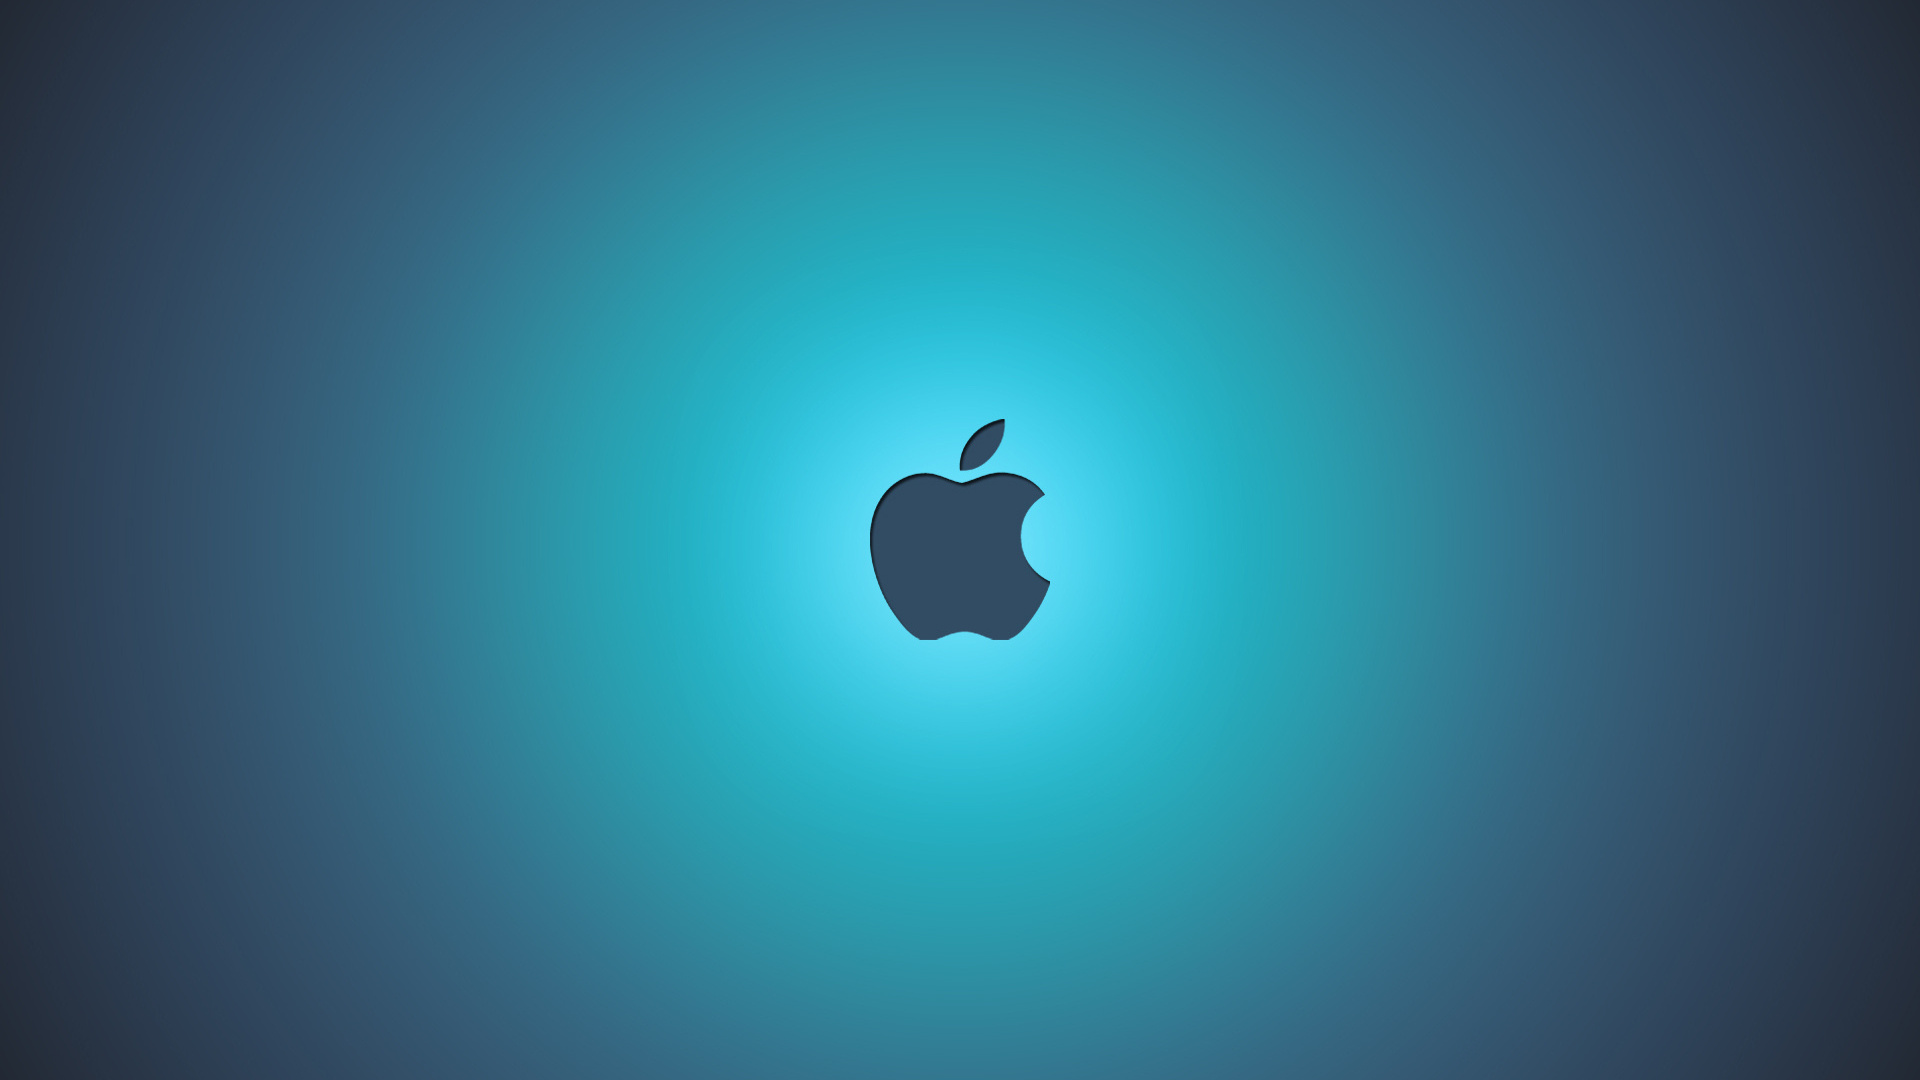 for apple download DesktopOK x64 11.11